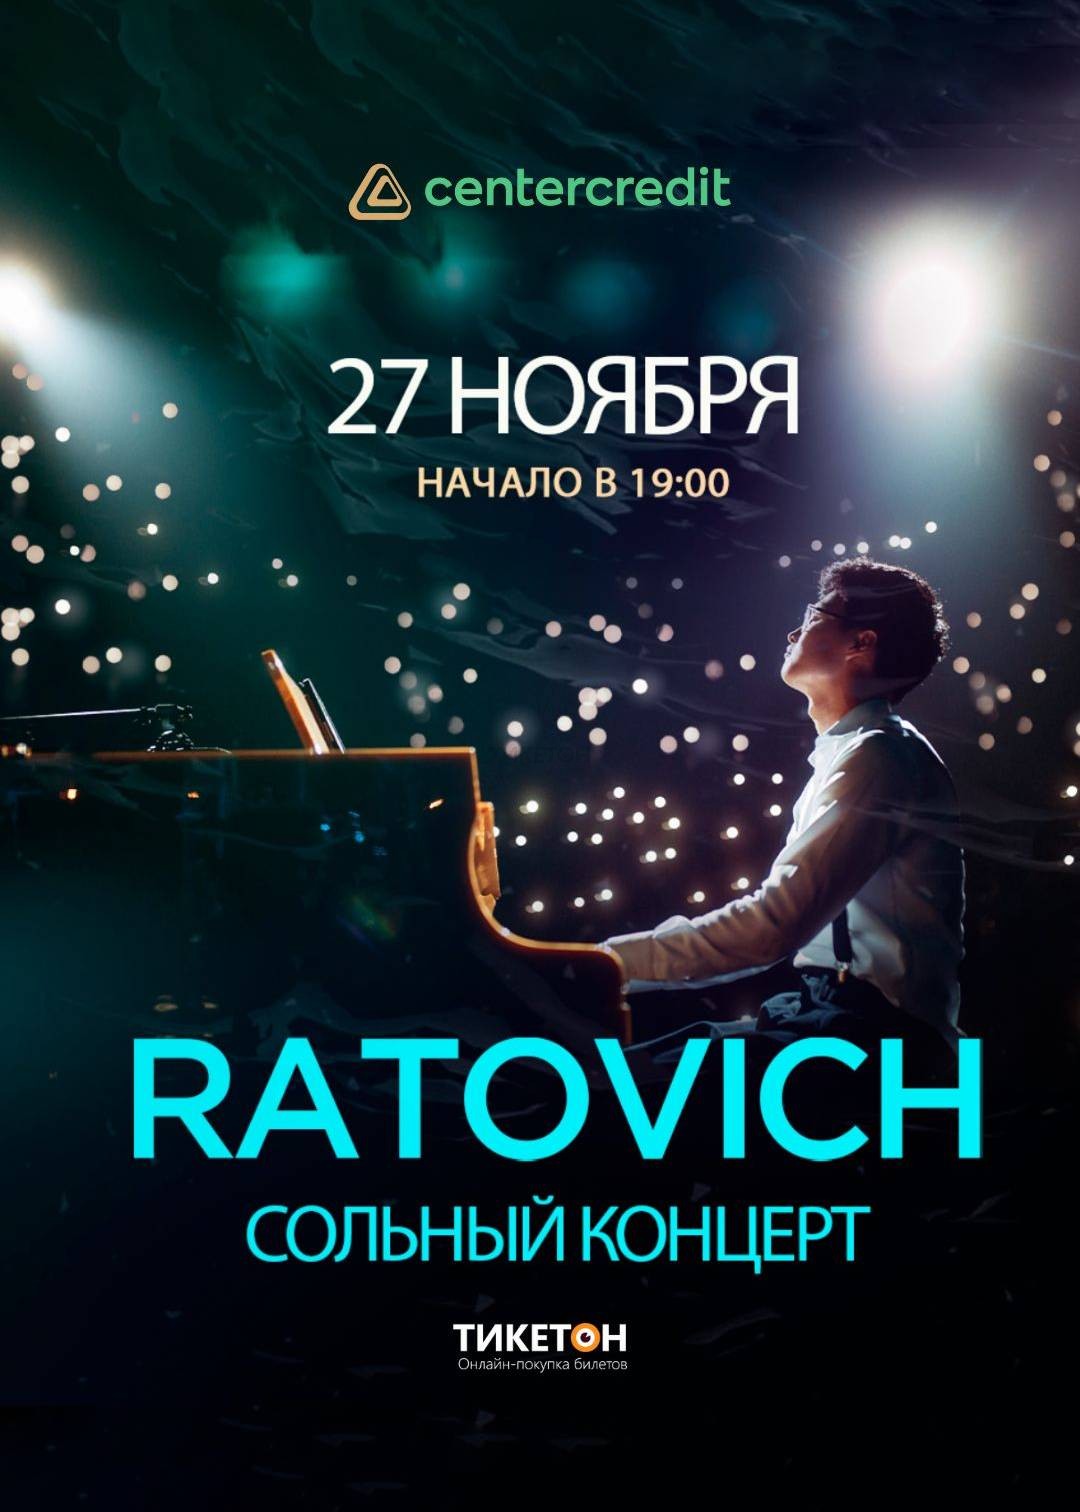 Сольный концерт Ratovich в Астане